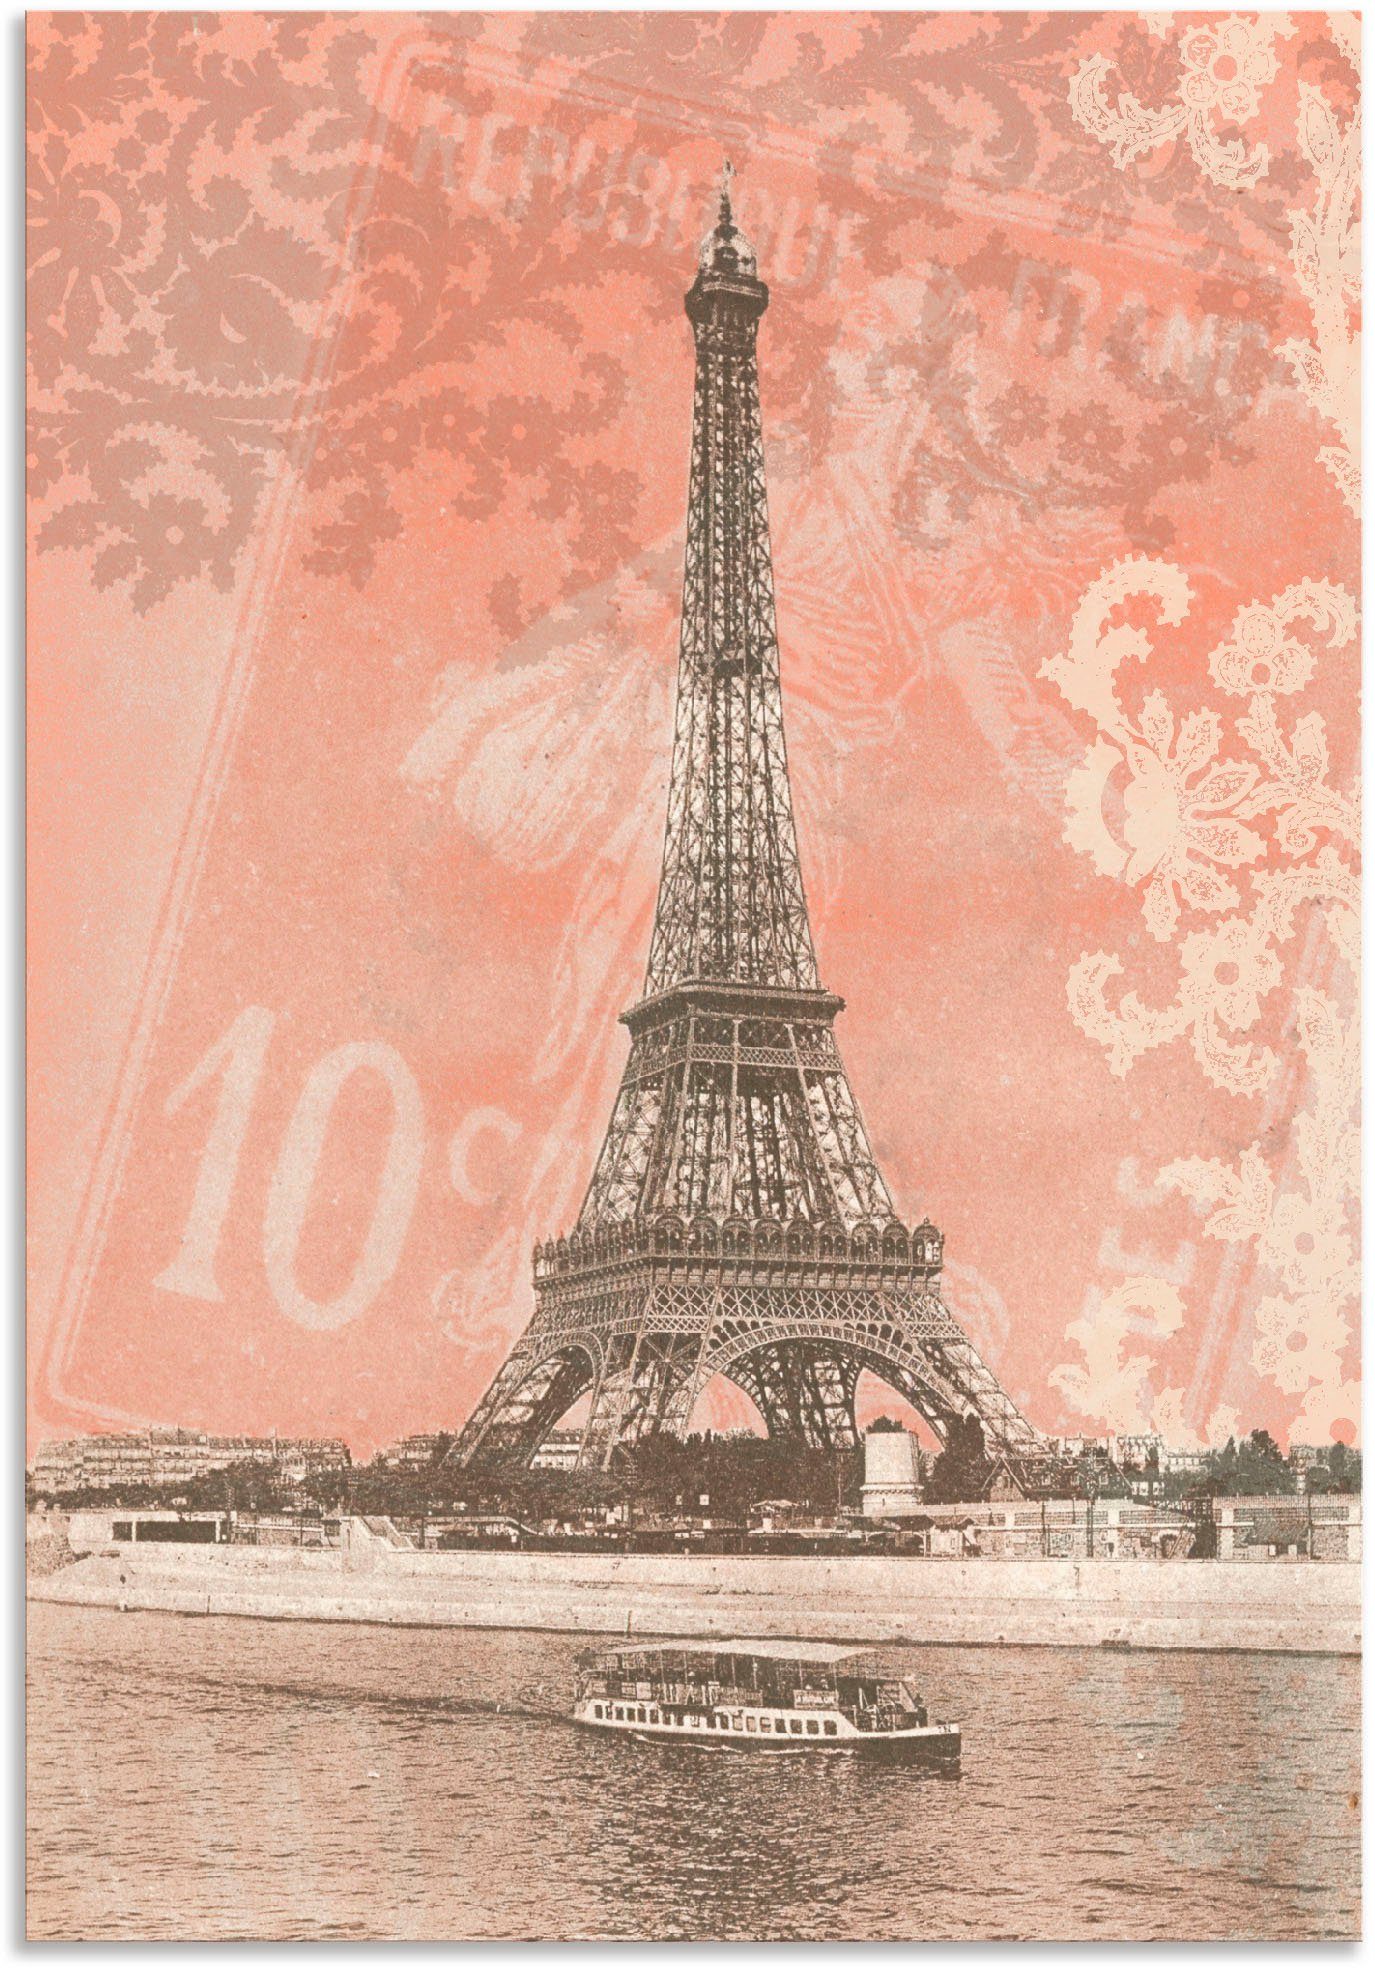 Artland Artprint Parijs - Eiffeltoren in vele afmetingen & productsoorten - artprint van aluminium / artprint voor buiten, artprint op linnen, poster, muursticker / wandfolie ook g